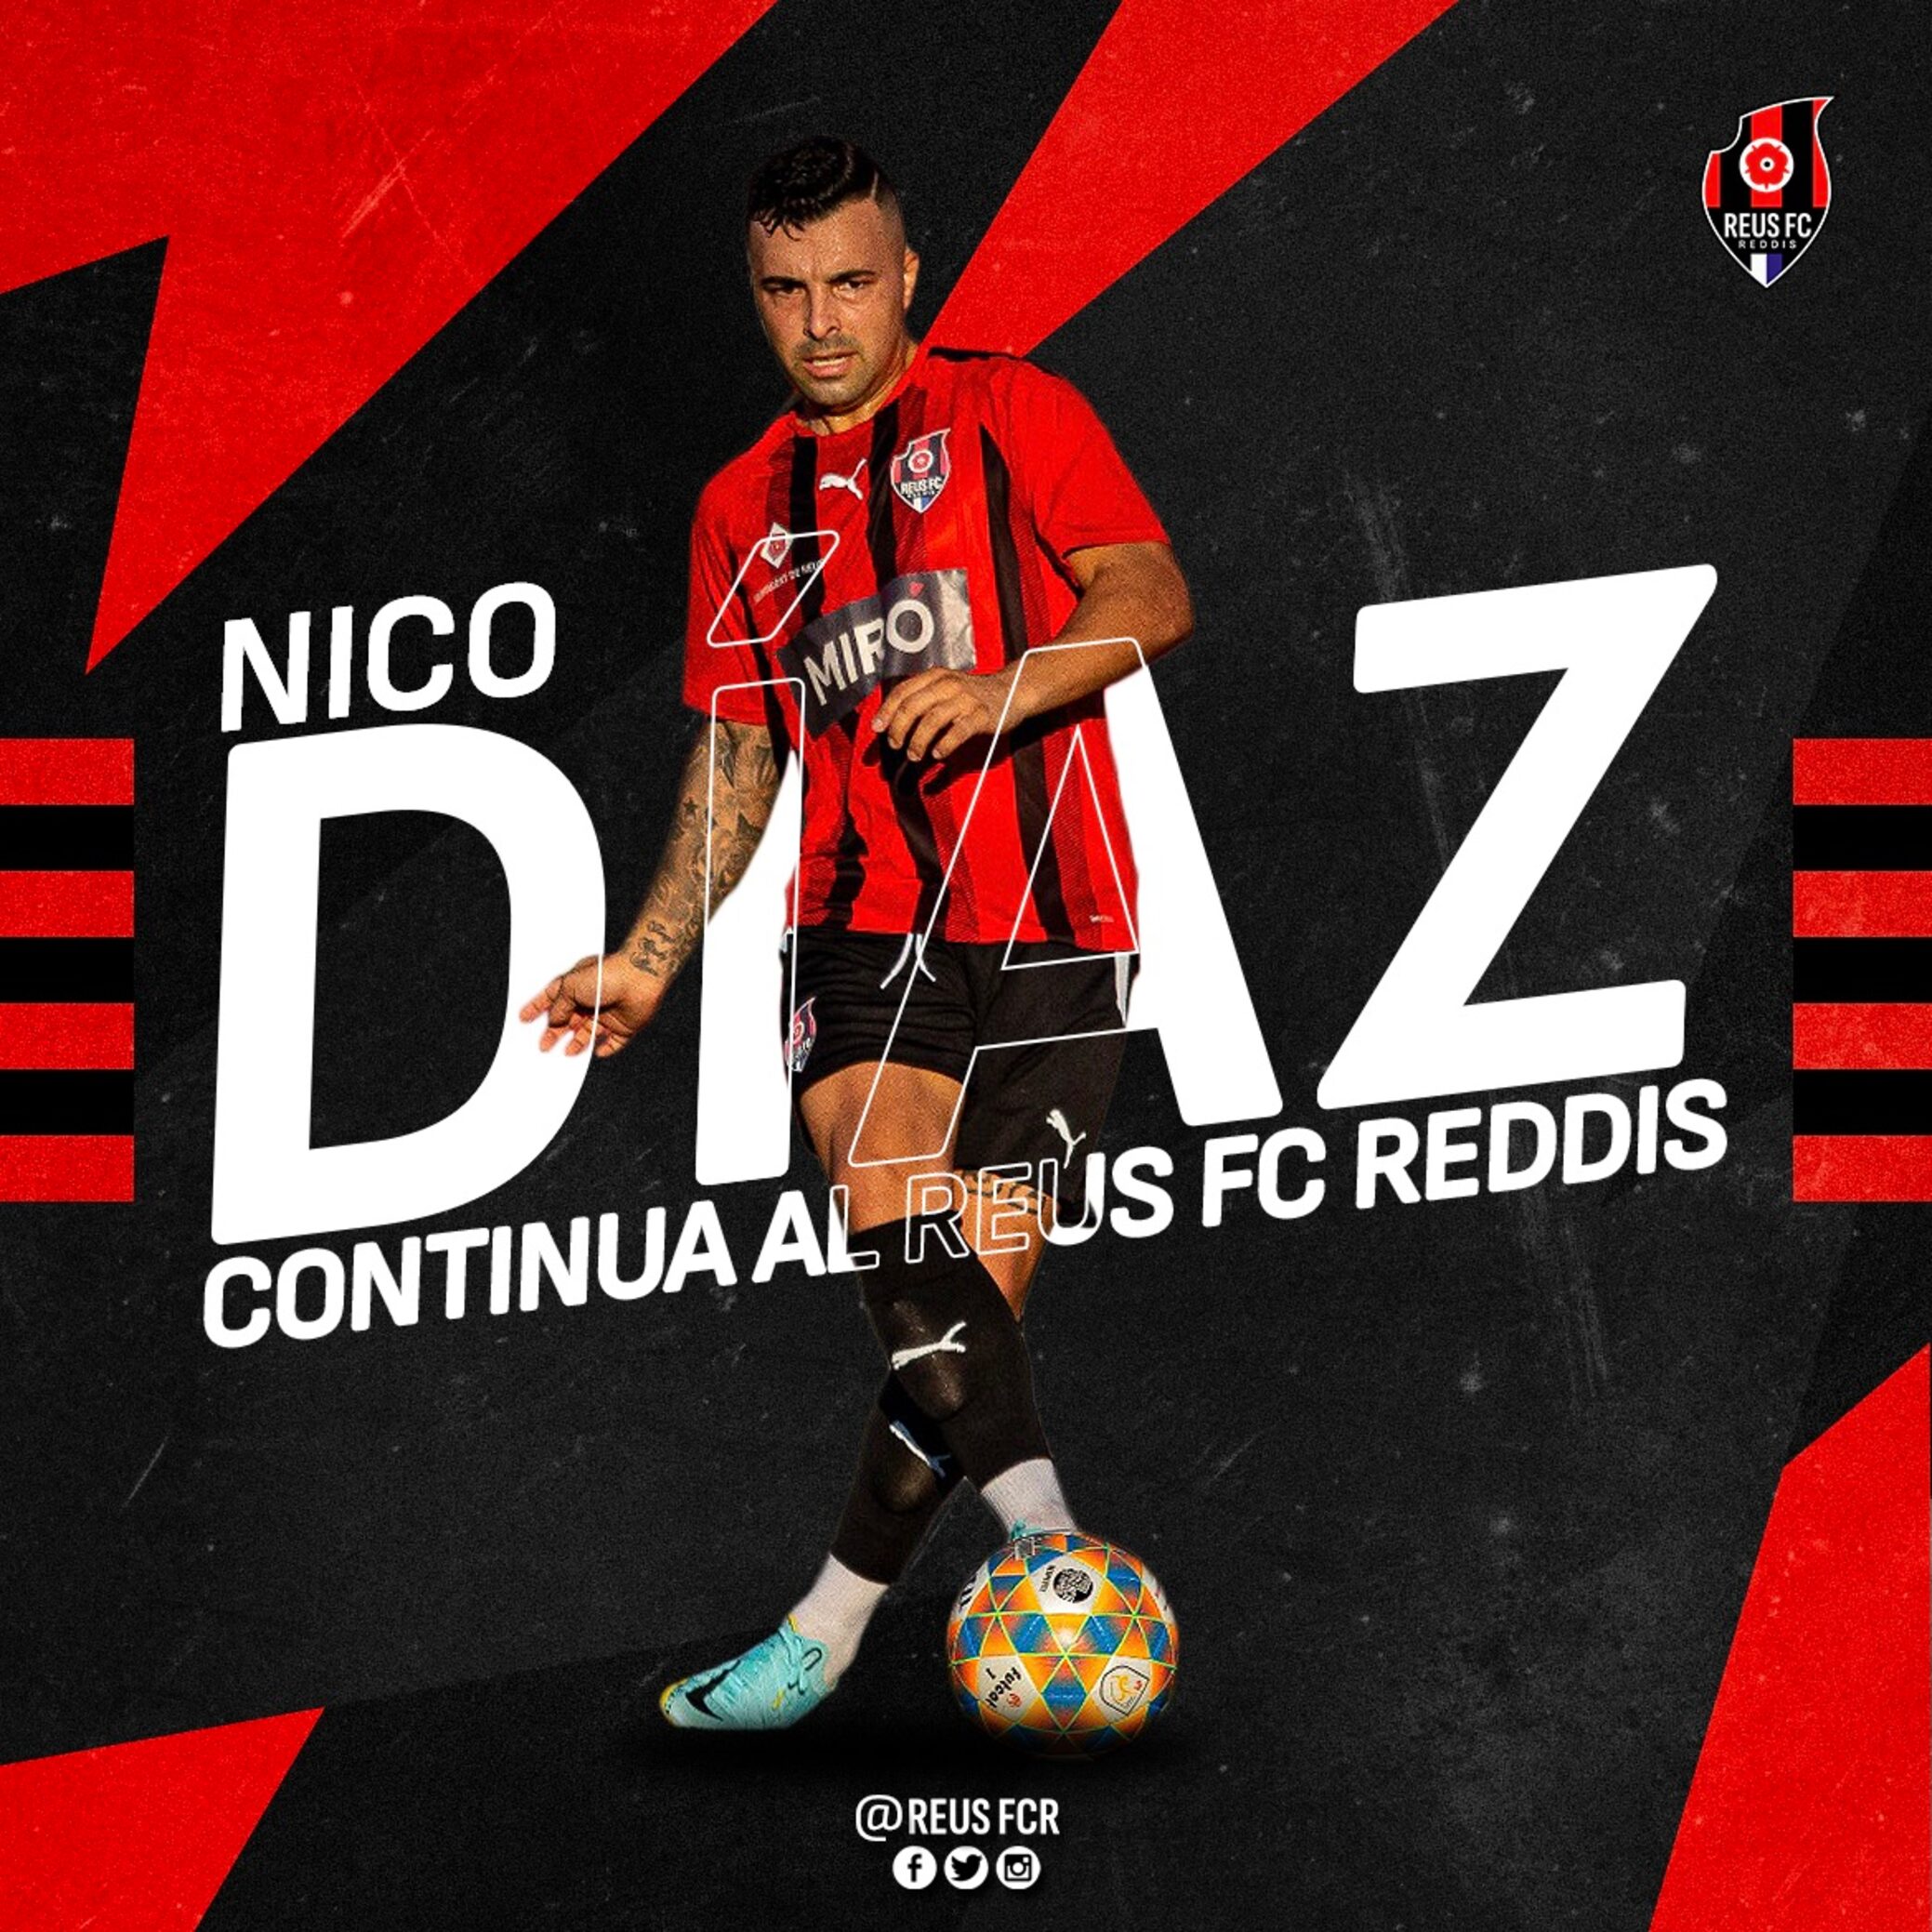 Nico Díaz renova amb el Reus FC Reddis